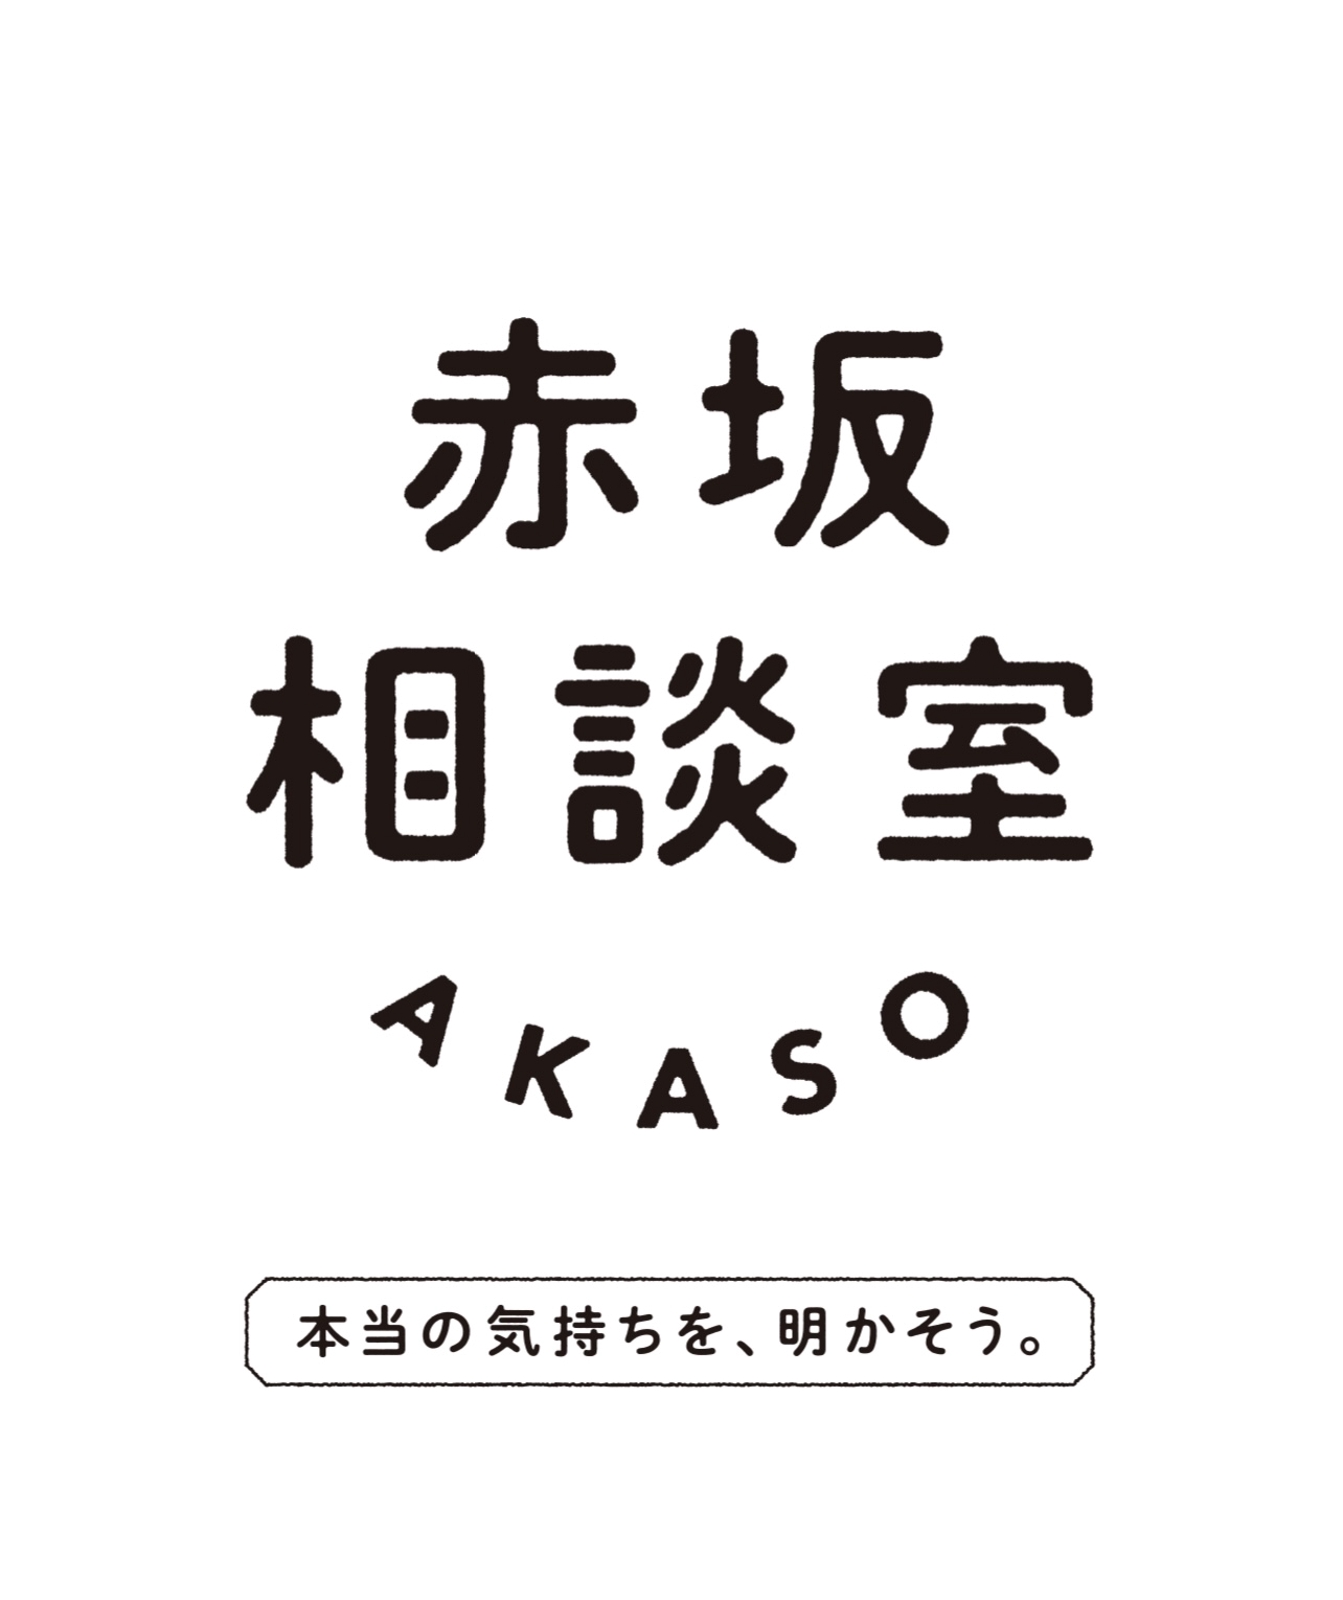 【赤坂相談室】AKASO〜本当の気持ちをそっと明かそう〜-image1